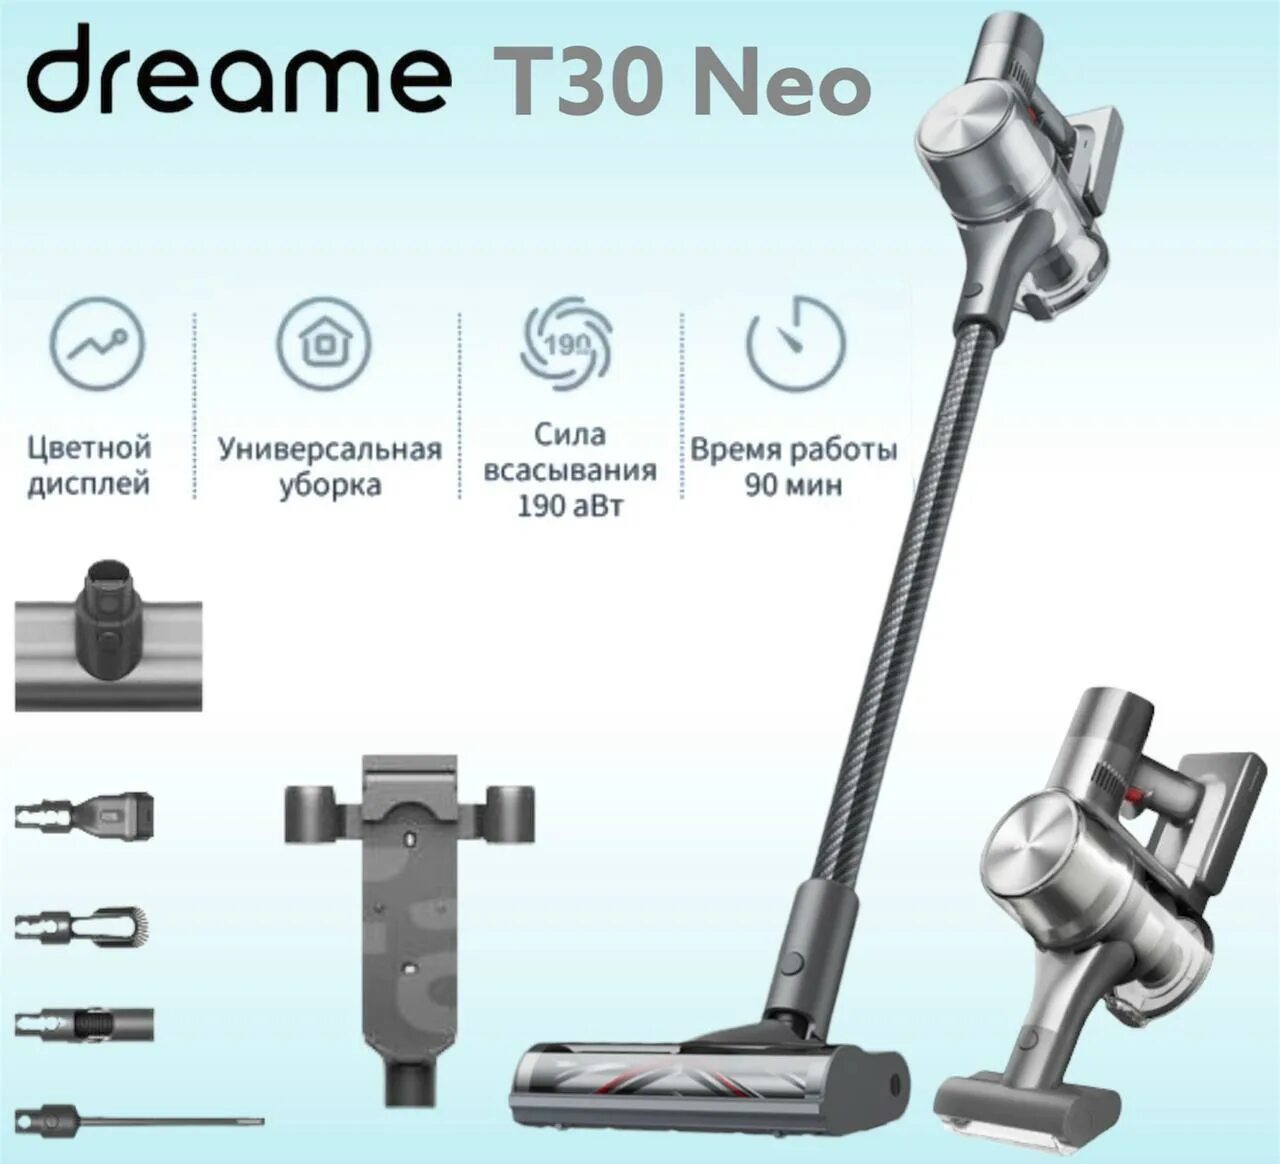 Пылесос Dreame t30. Беспроводной вертикальный пылесос Xiaomi Dreame t30. Dreame t30 Neo. Пылесос Dreame t30 Neo.